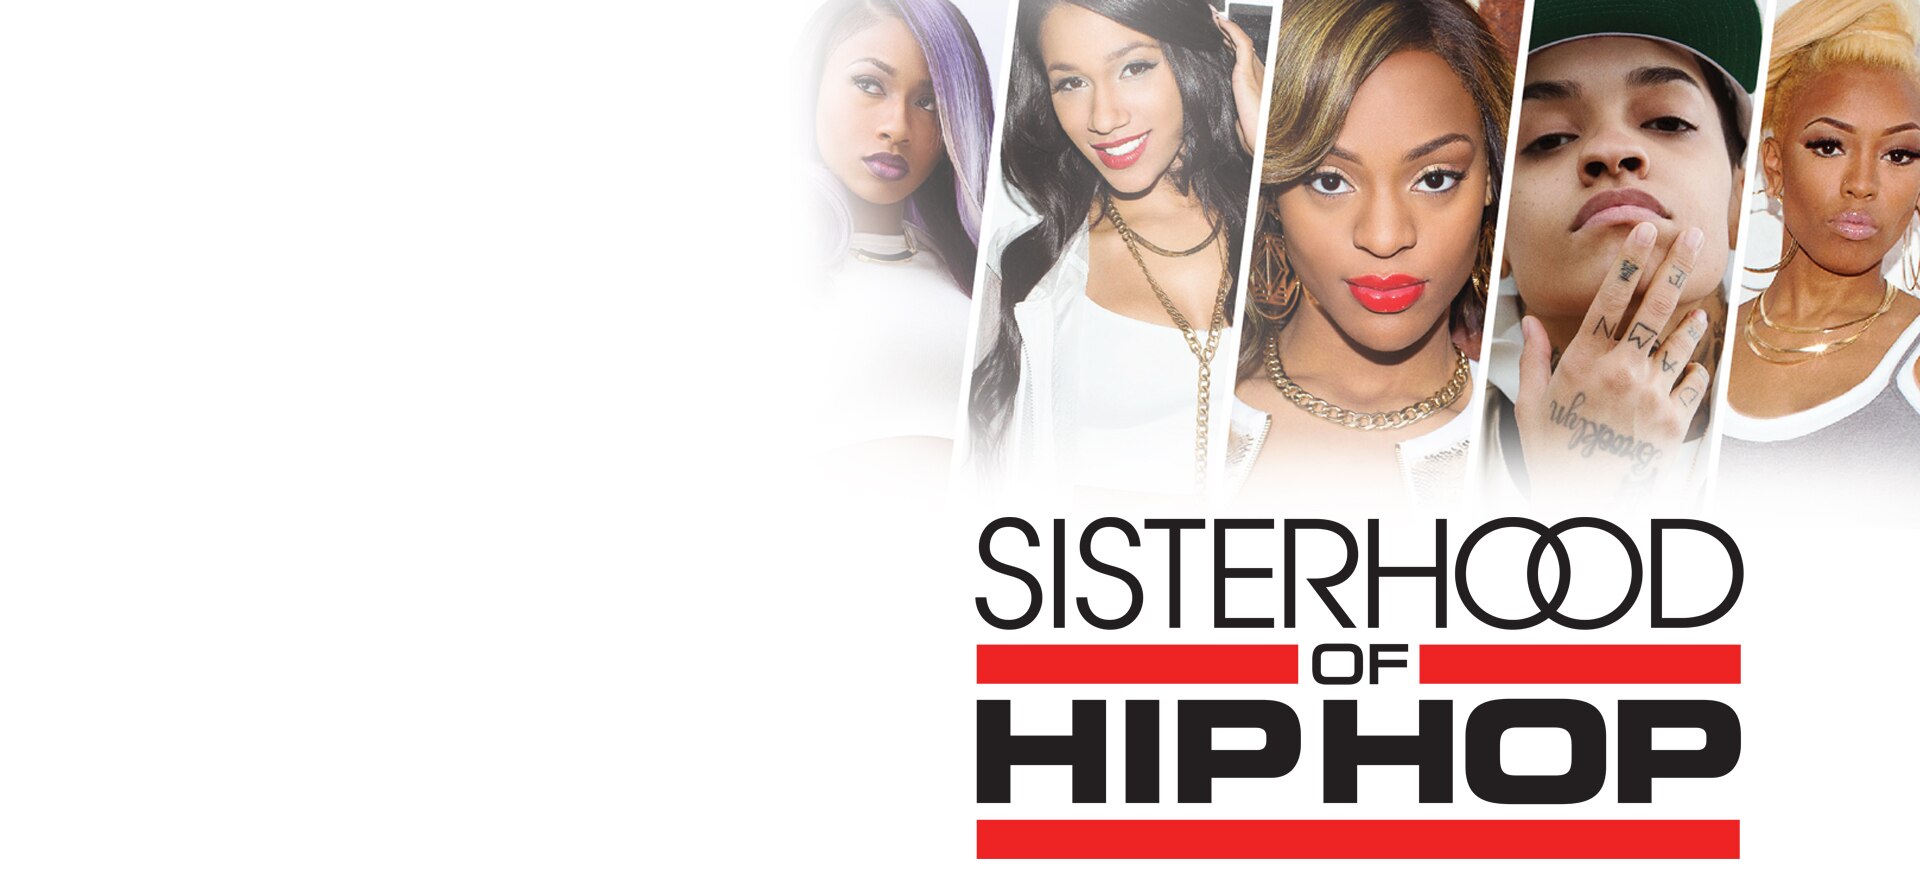 Sisterhood of Hip Hop on FREECABLE TV